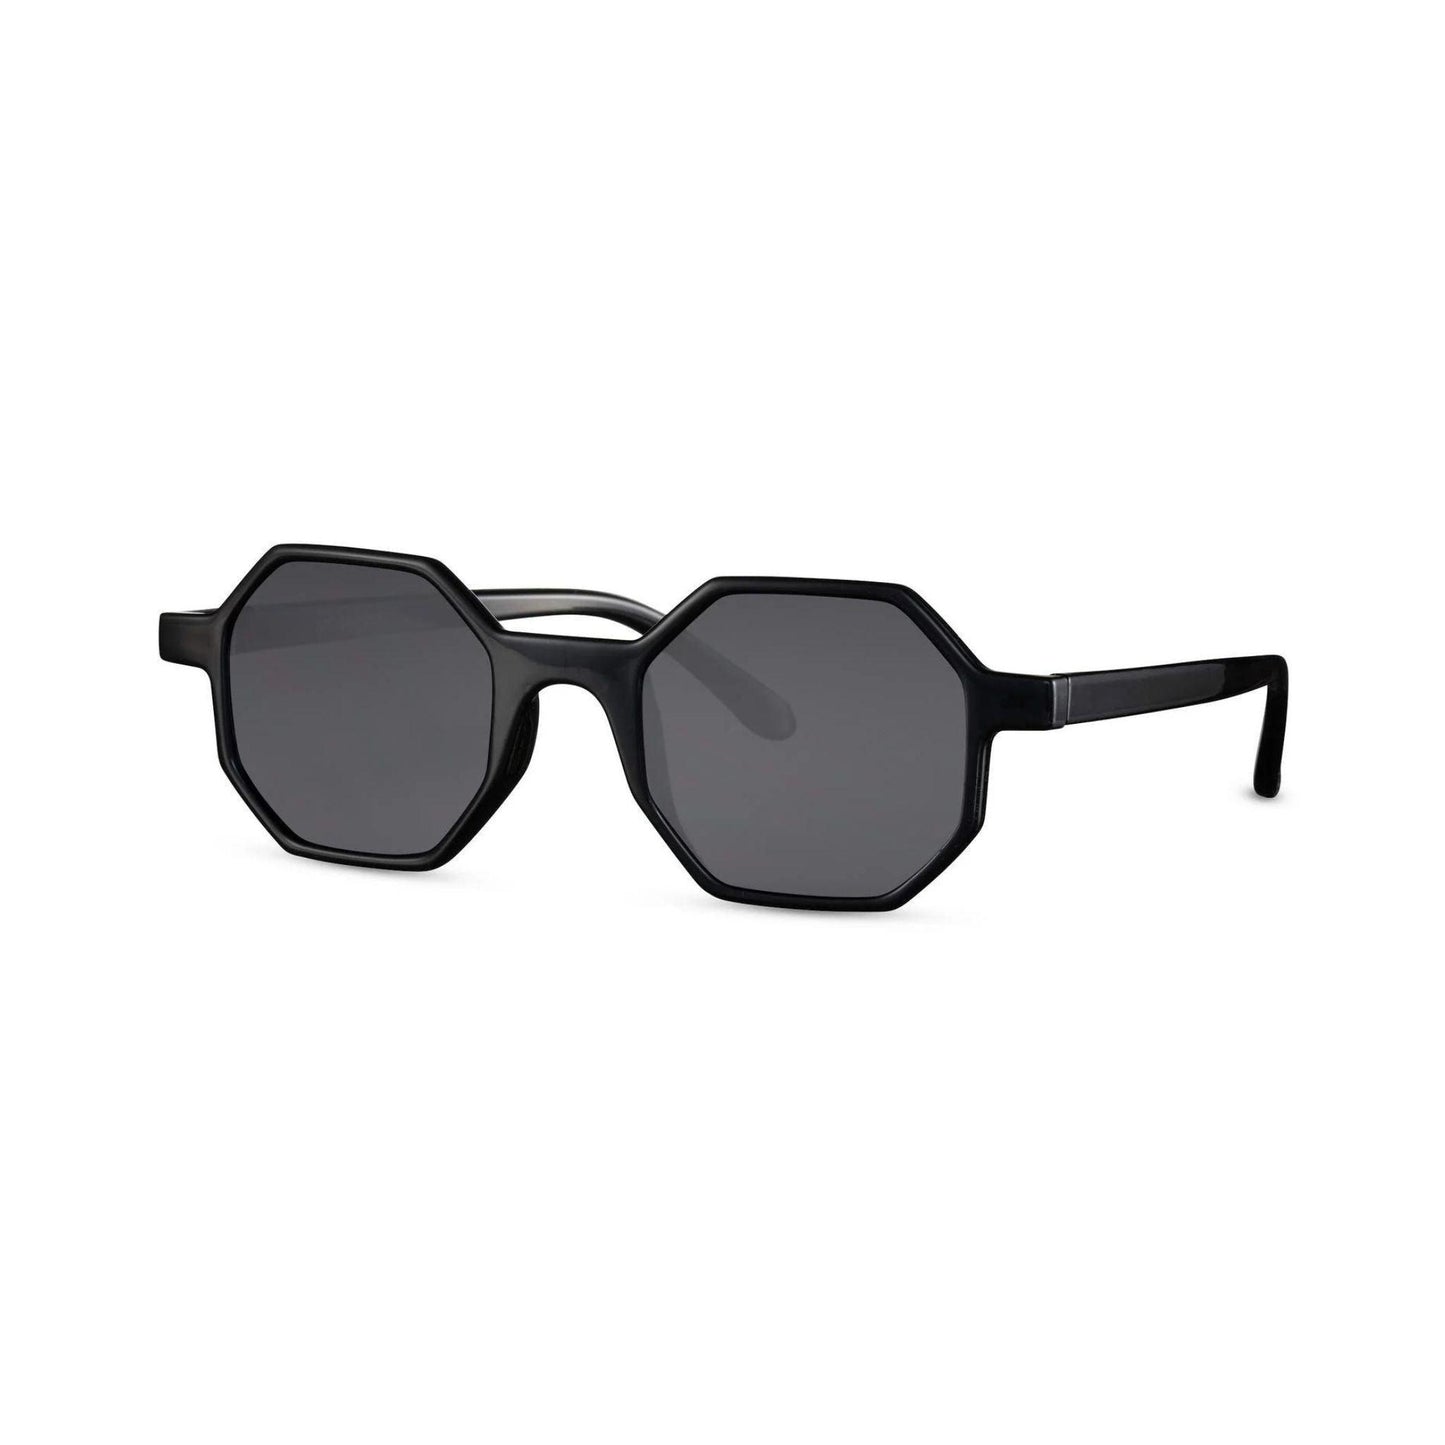 Στρογγυλά Γυαλιά Ηλίου Boheme της Exposure Sunglasses με προστασία UV400 σε μαύρο χρώμα σκελετού και μαύρο φακό. Πλάγια